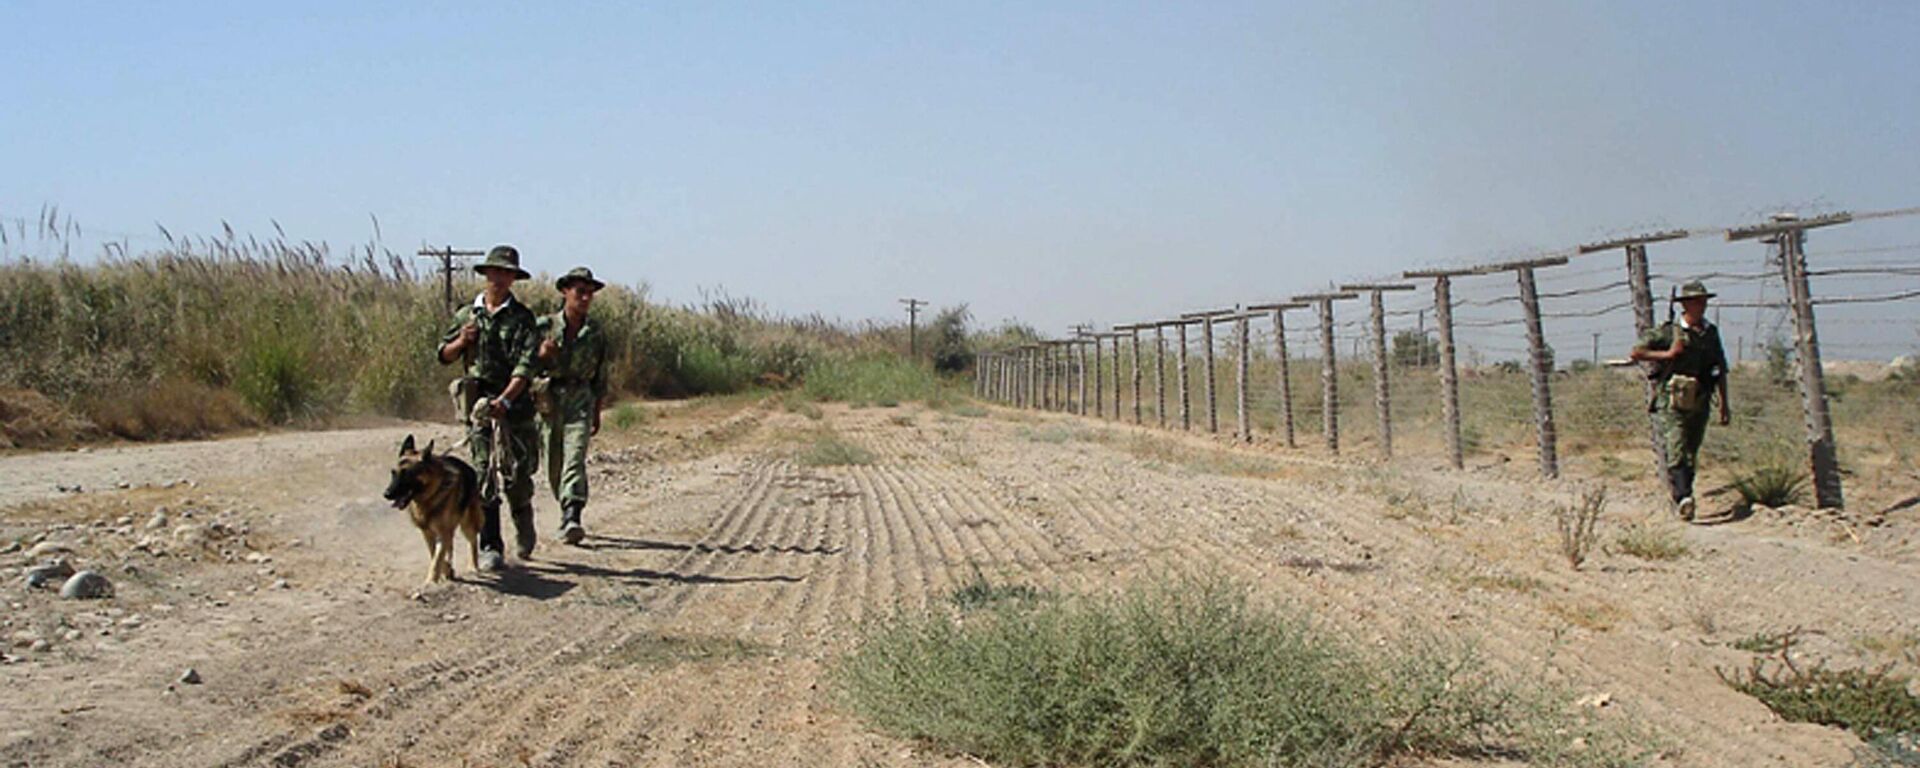 Таджикские пограничники на границе с Афганистаном - Sputnik Ўзбекистон, 1920, 24.06.2021